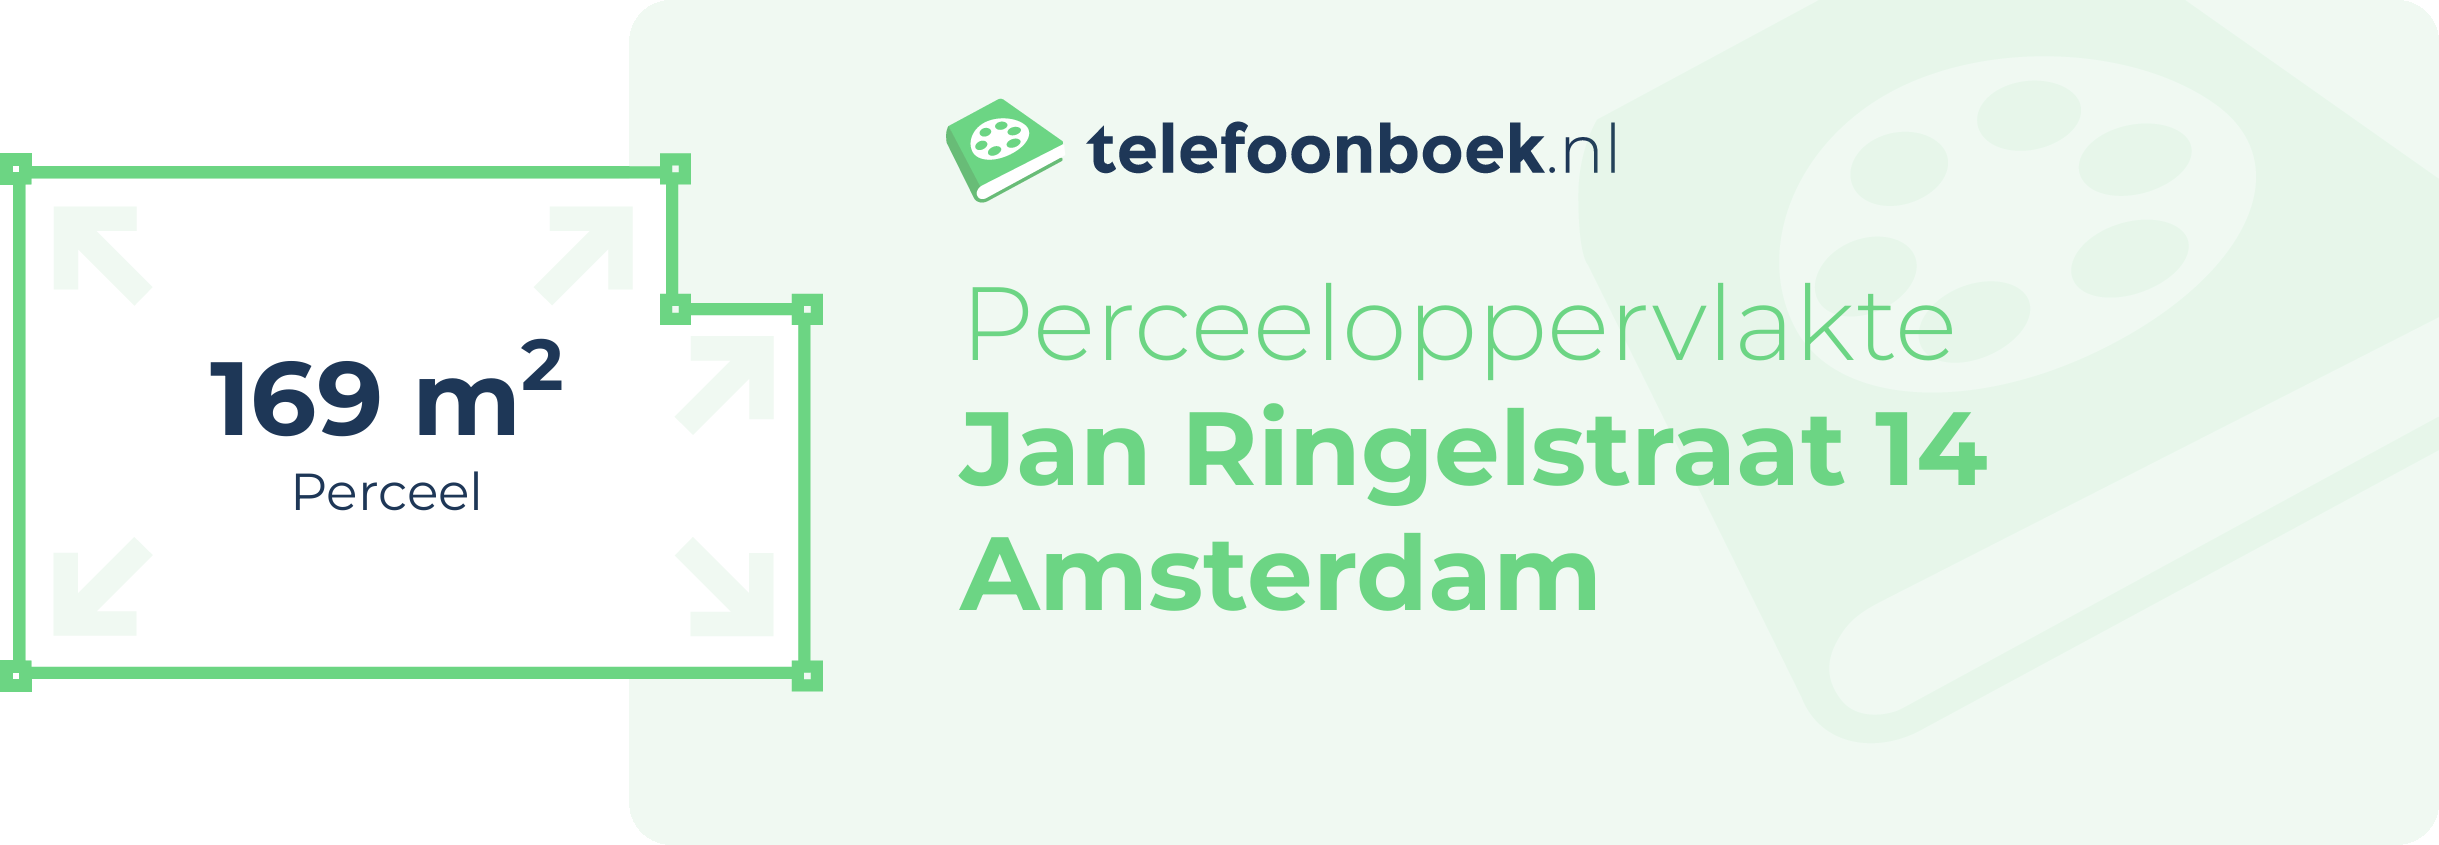 Perceeloppervlakte Jan Ringelstraat 14 Amsterdam